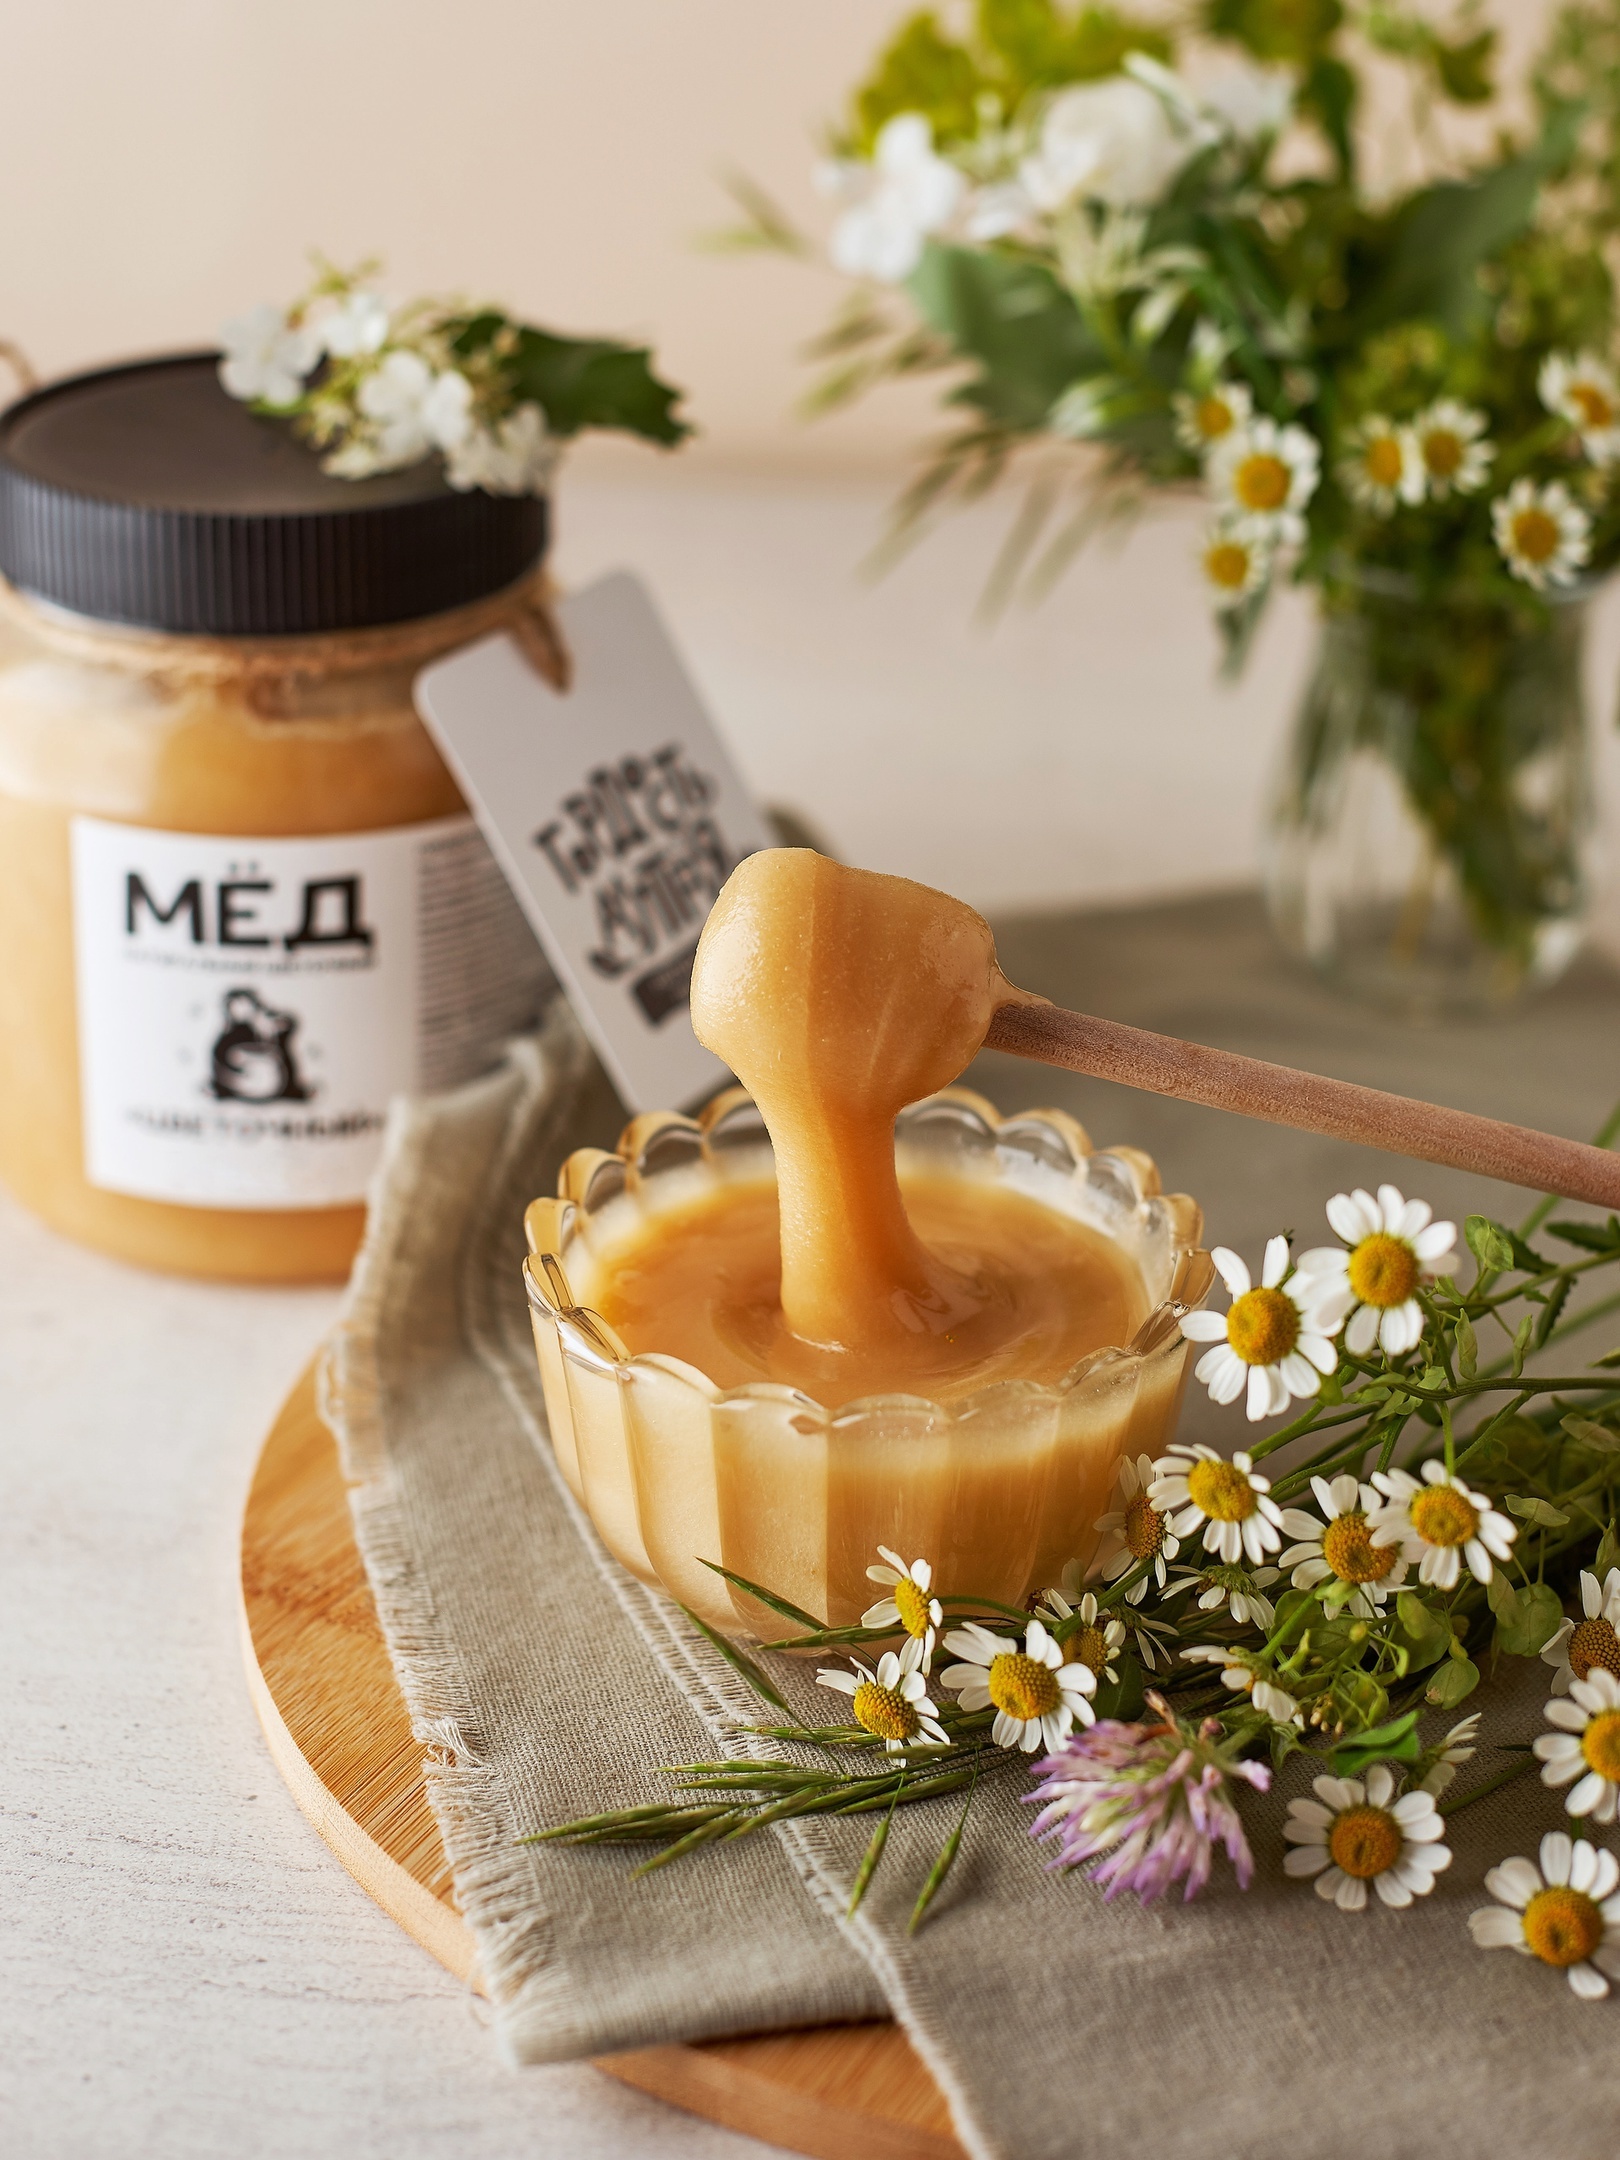 Медовый дом отзывы. Крем-мёд гордость Алтая с ананасом, 40 г. Цветочный Алтай картинки с добрым утром..